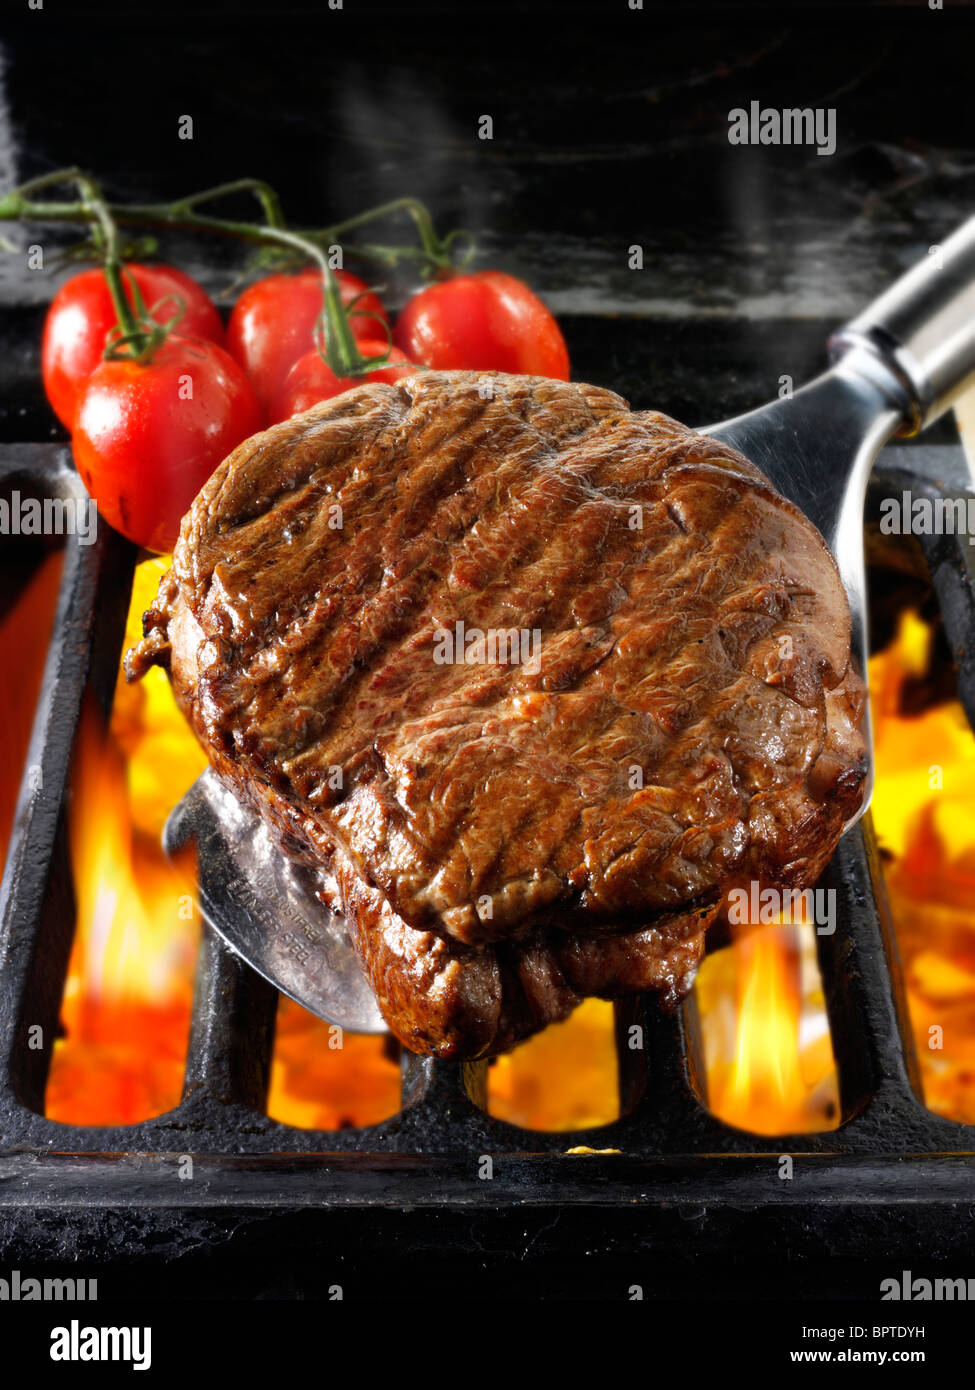 Rindfleisch Filetsteaks & Tomaten auf einem Grill gekocht wird. Fleisch essen Fotos, Bilder & Bilder. Stockfoto